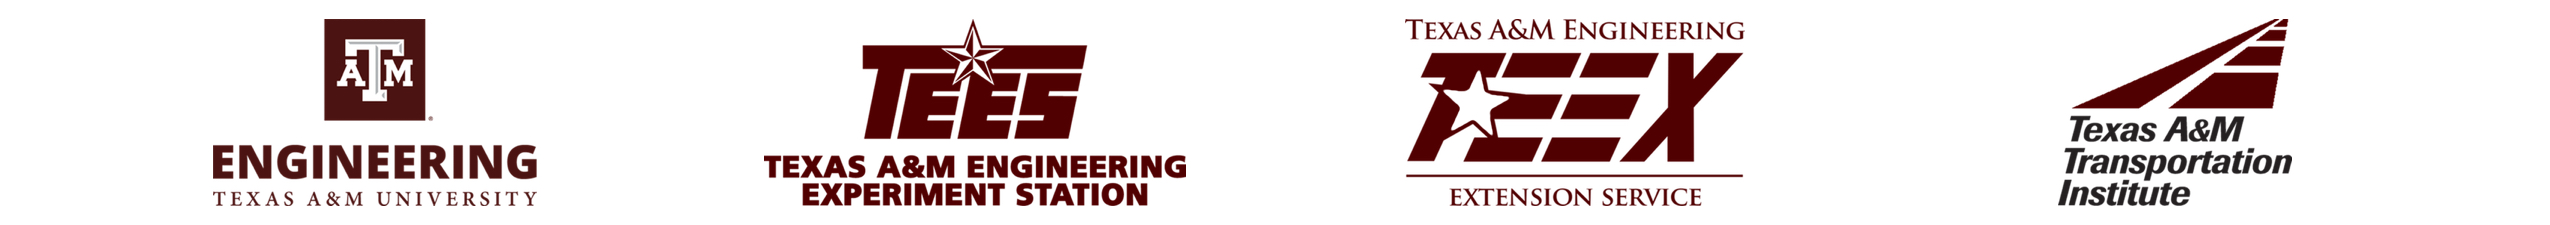 Engineering Agency Logos